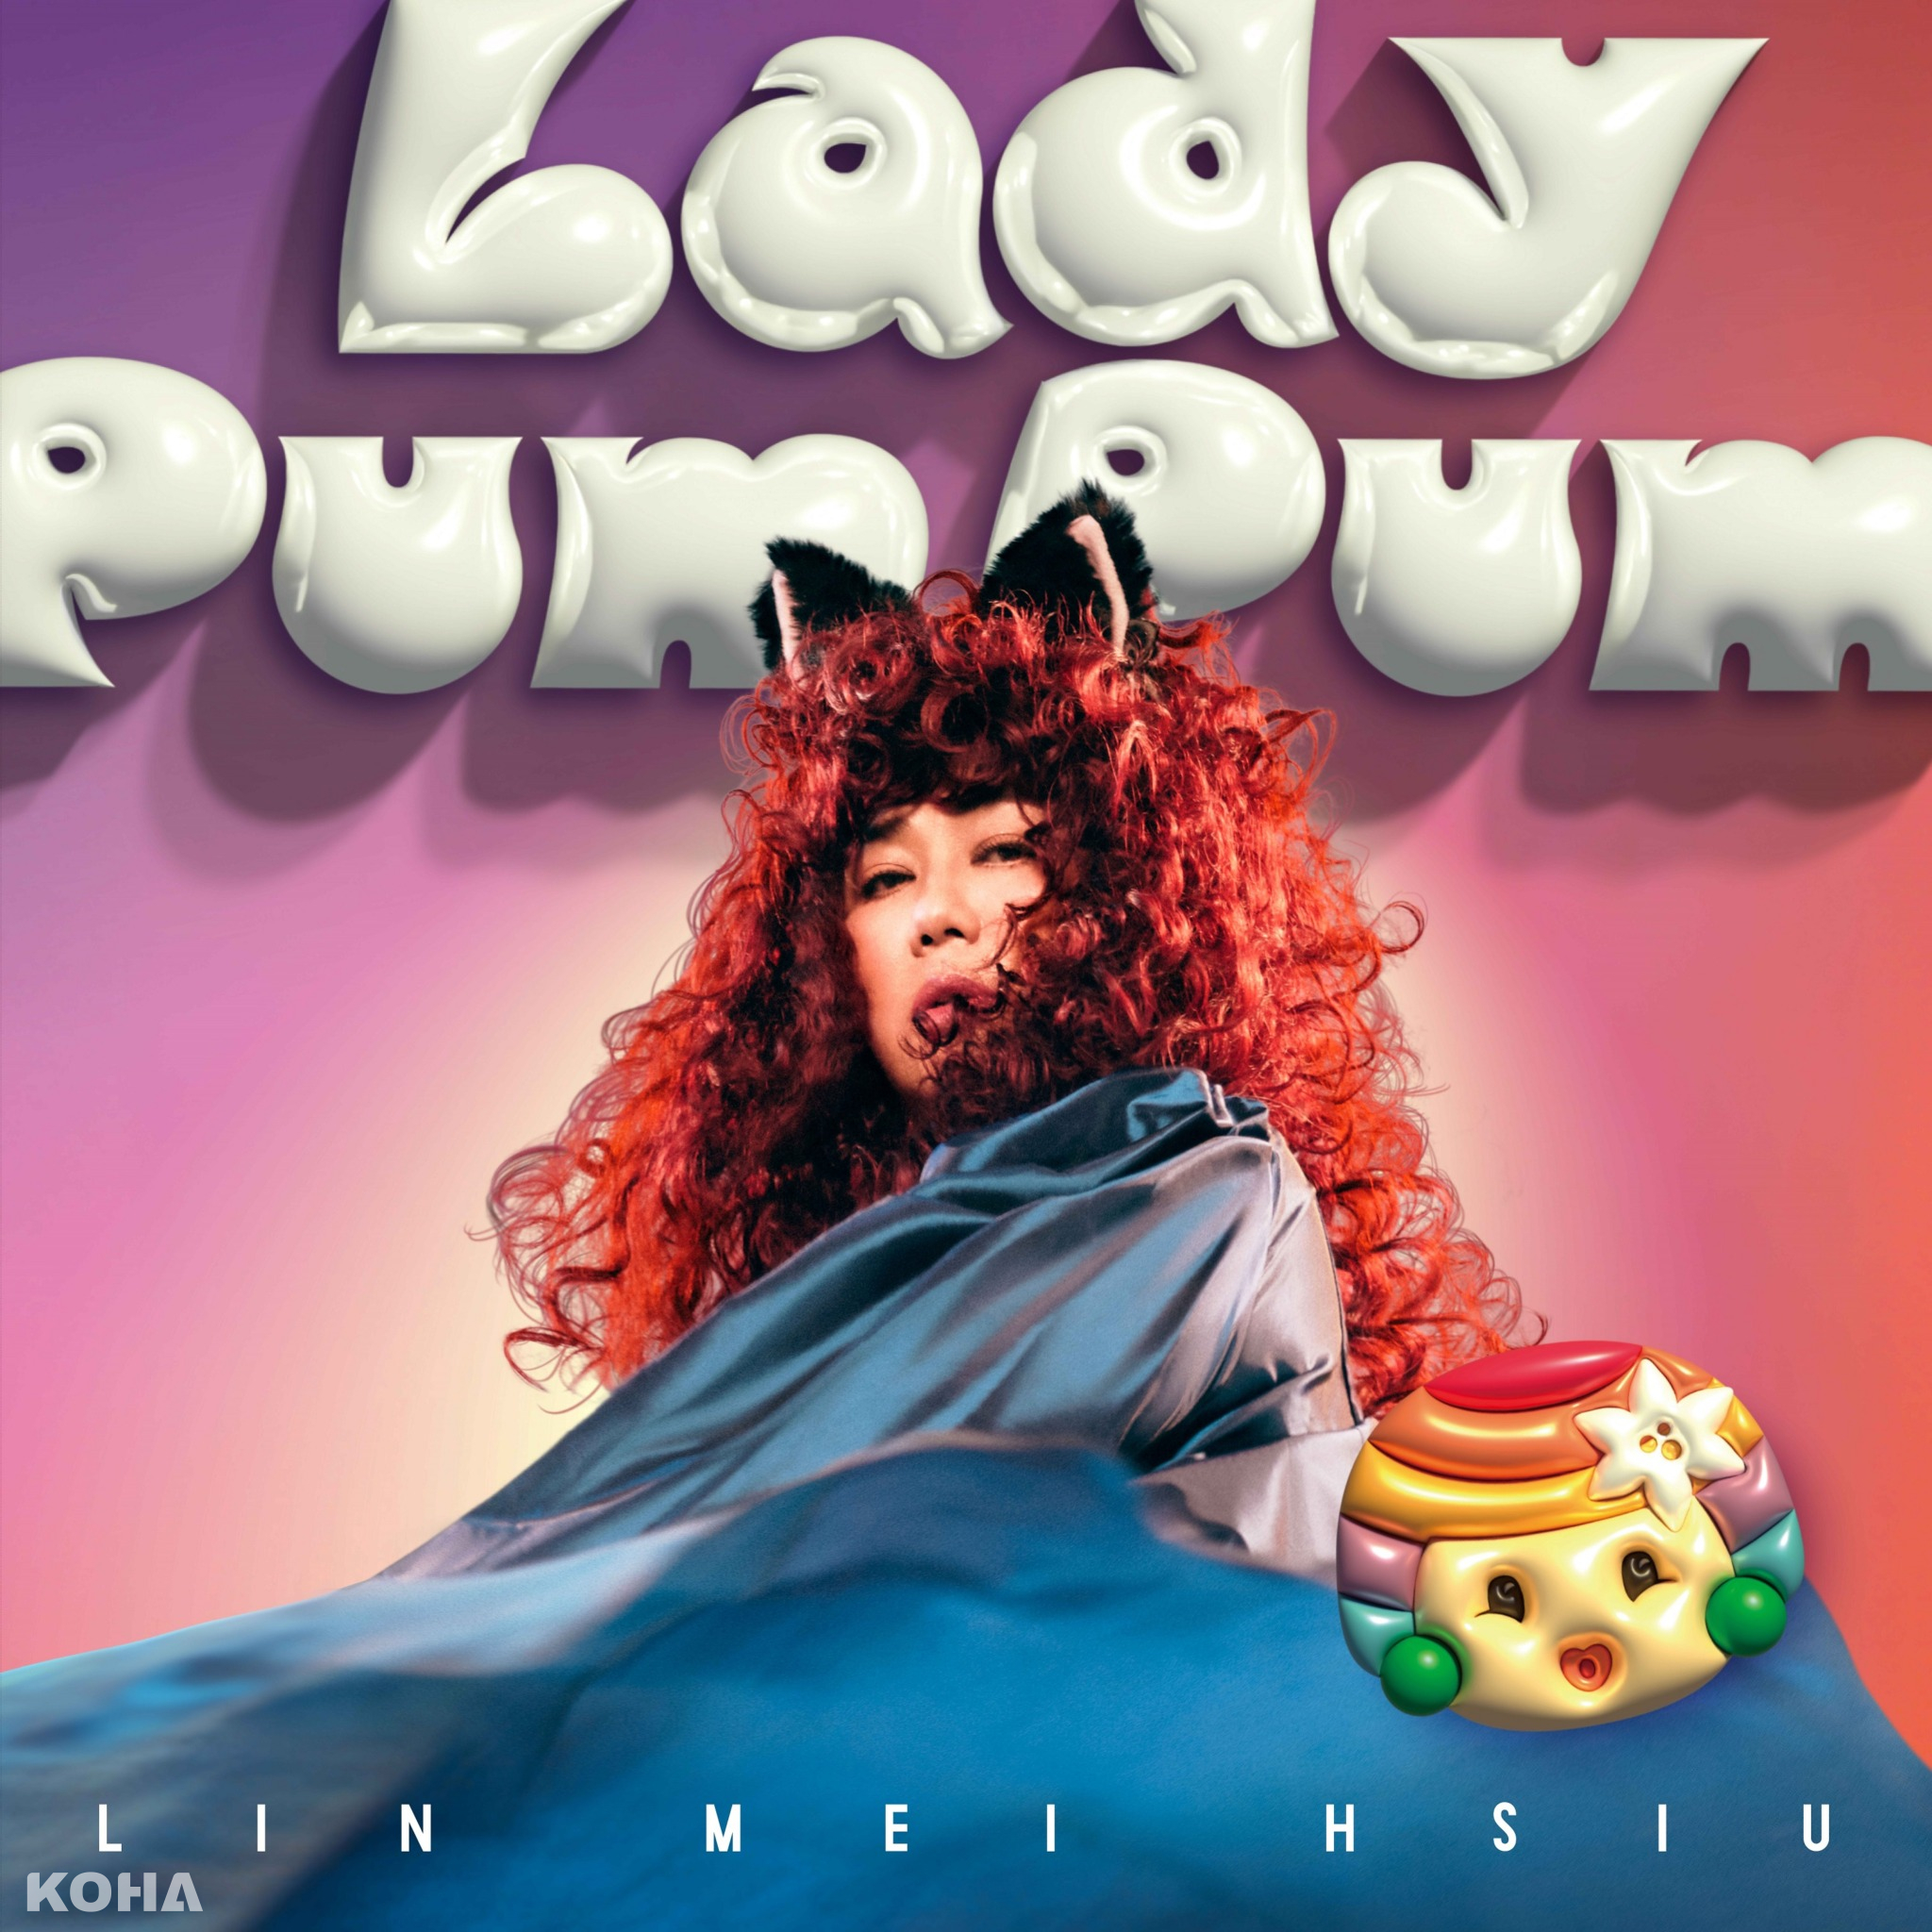 四金影后林美秀跨足樂壇變身”Lady Pum Pum”高唱探戈舞曲〈烏貓〉